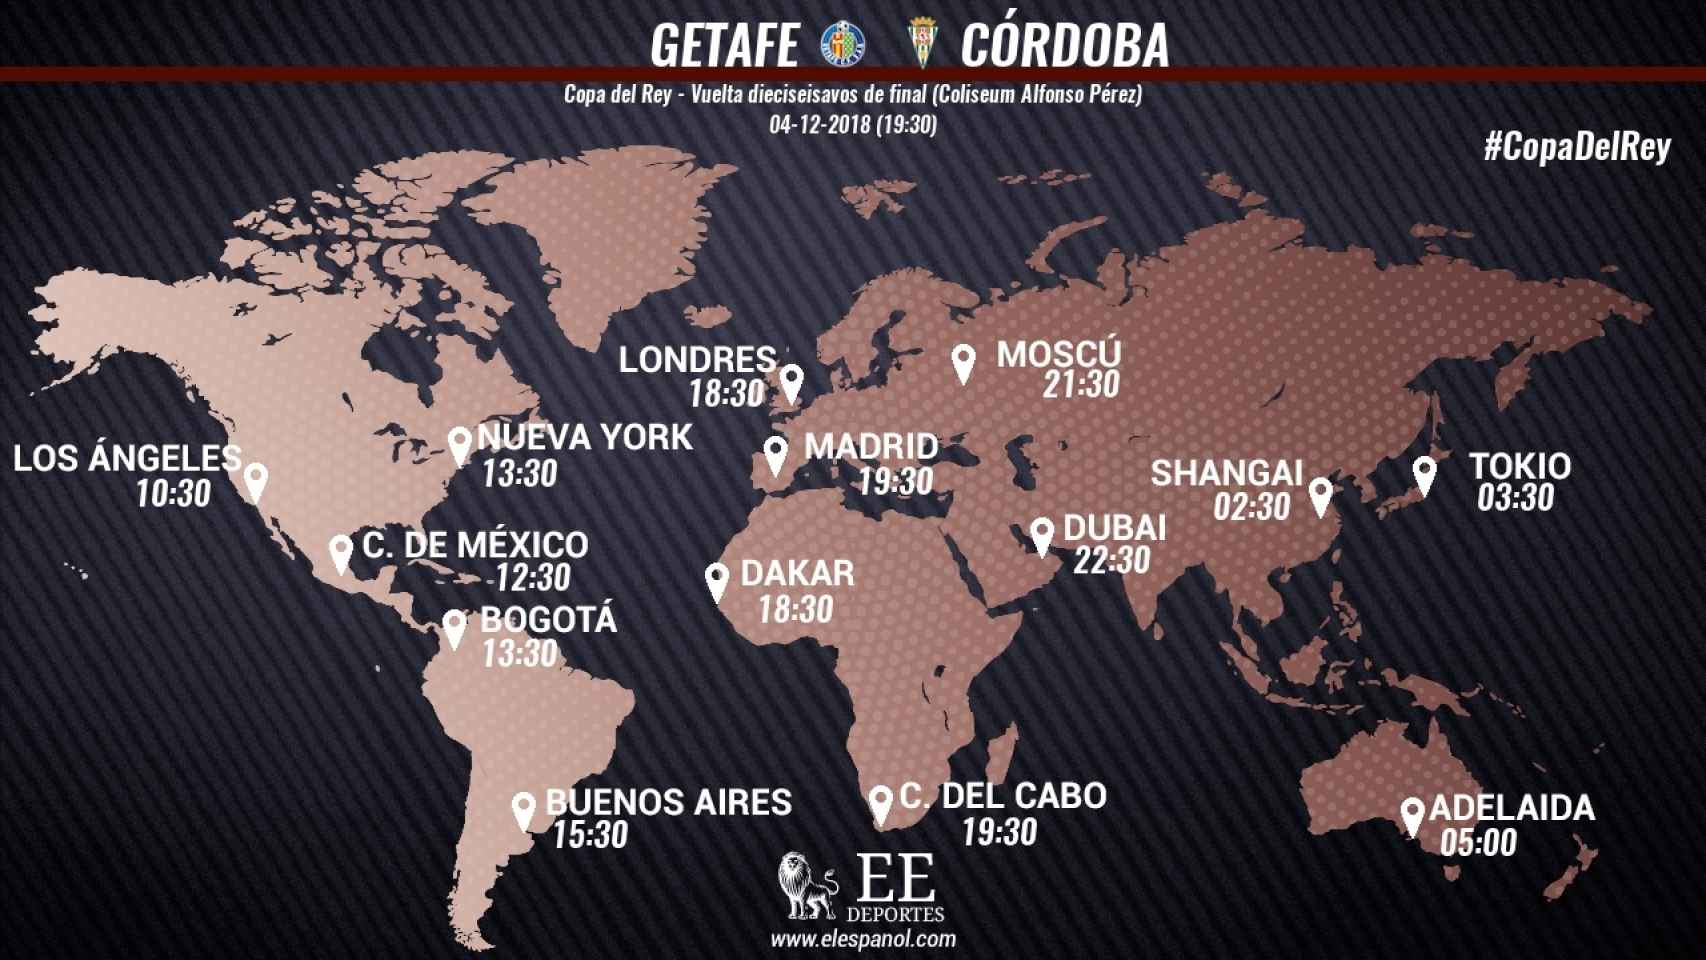 Horario del Getafe - Córdoba